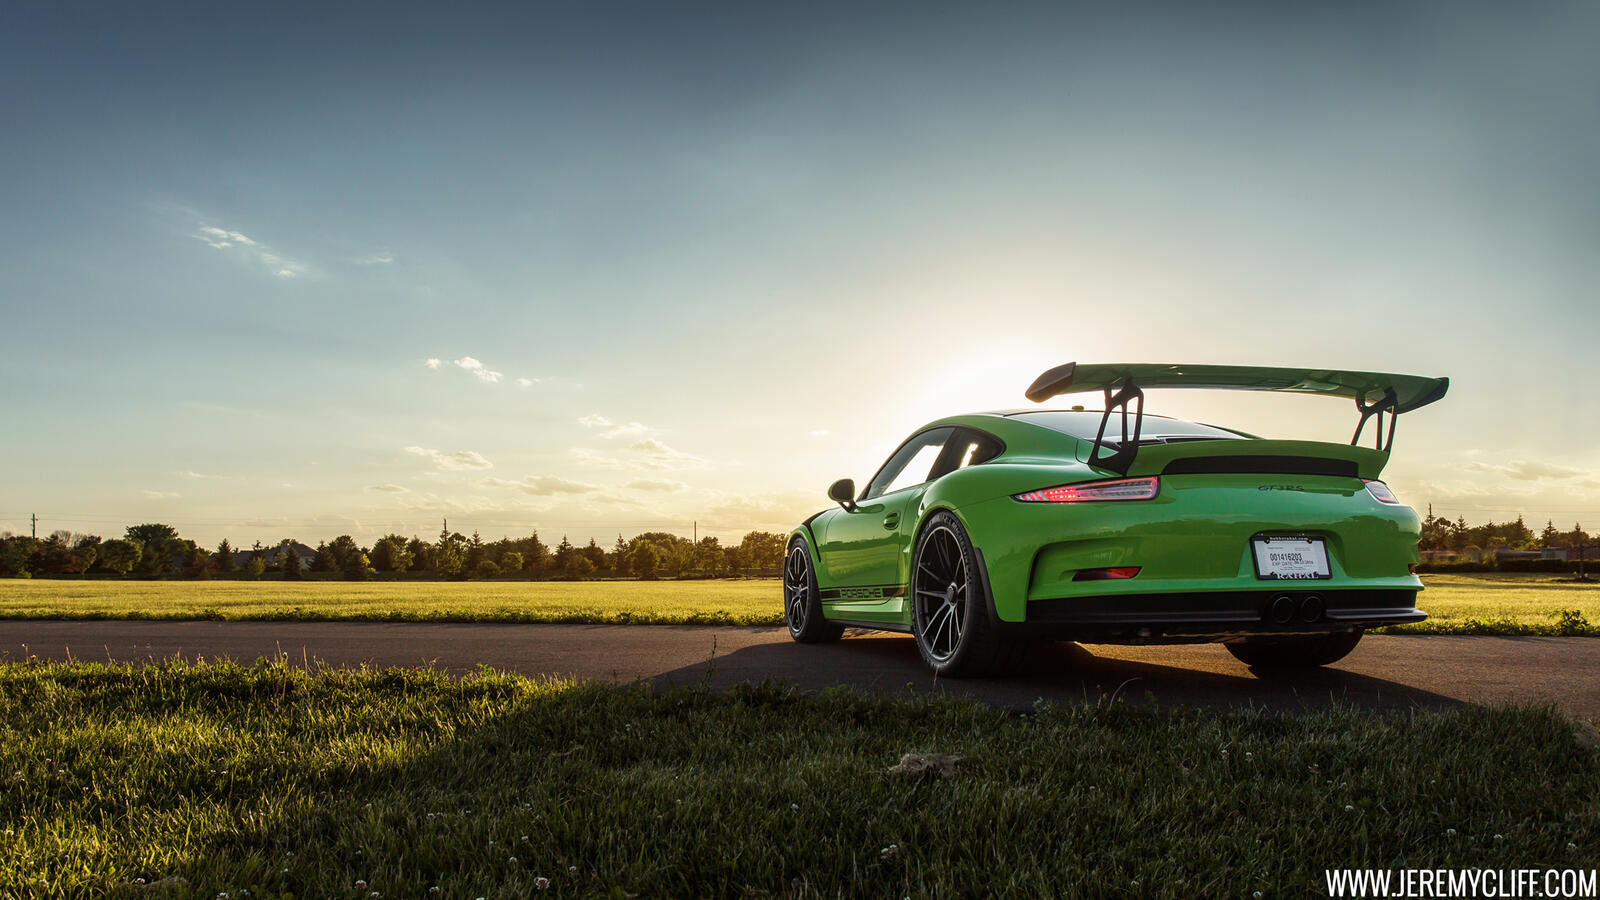 Бесплатное фото Porsche 911 в зеленом цвете с большим спойлером